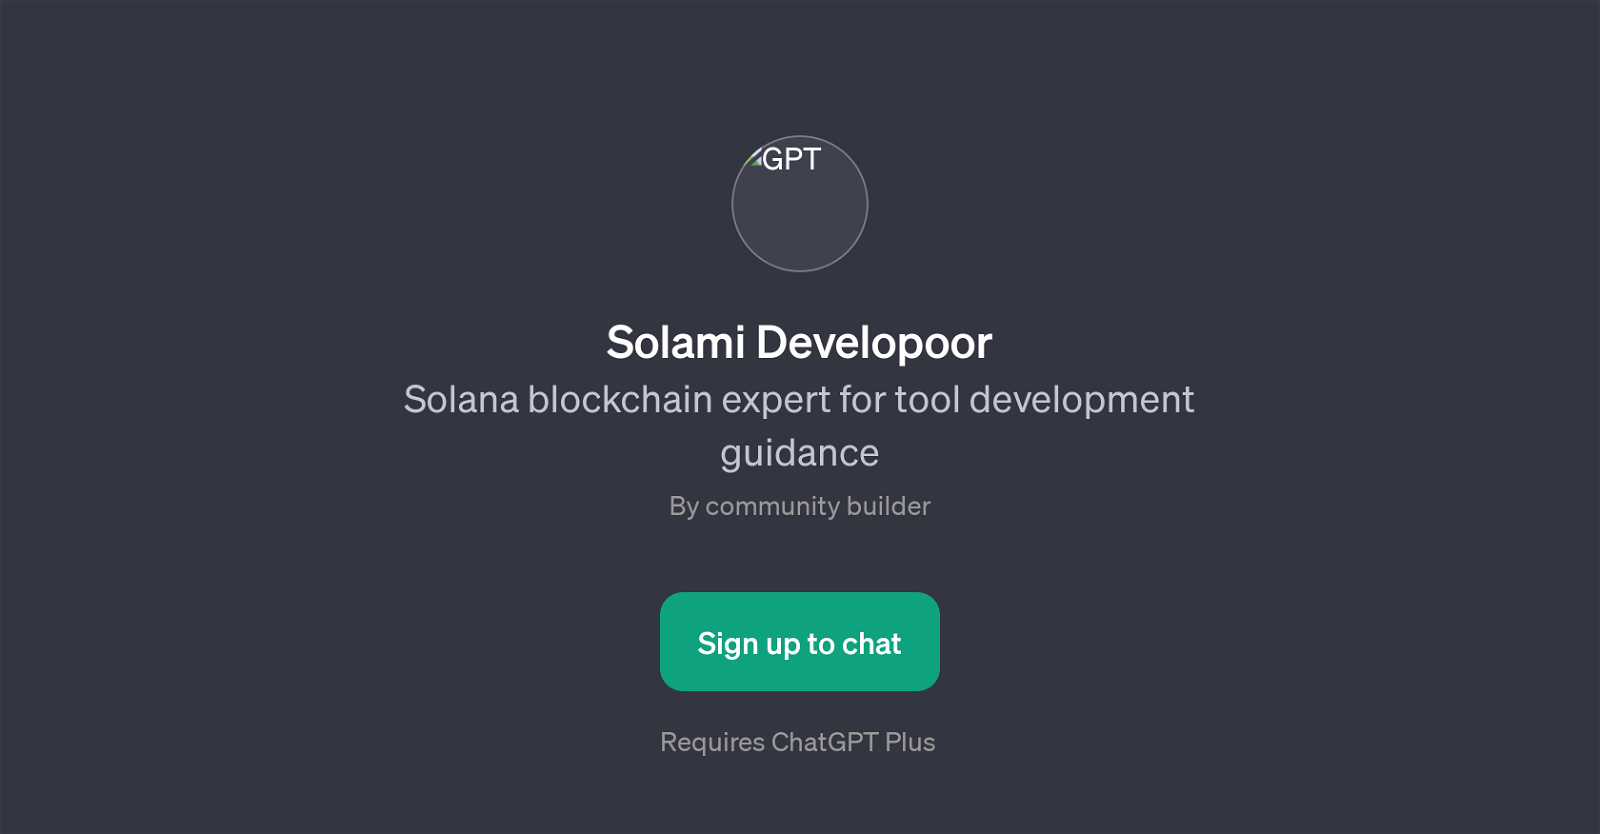 Solami Developoor website